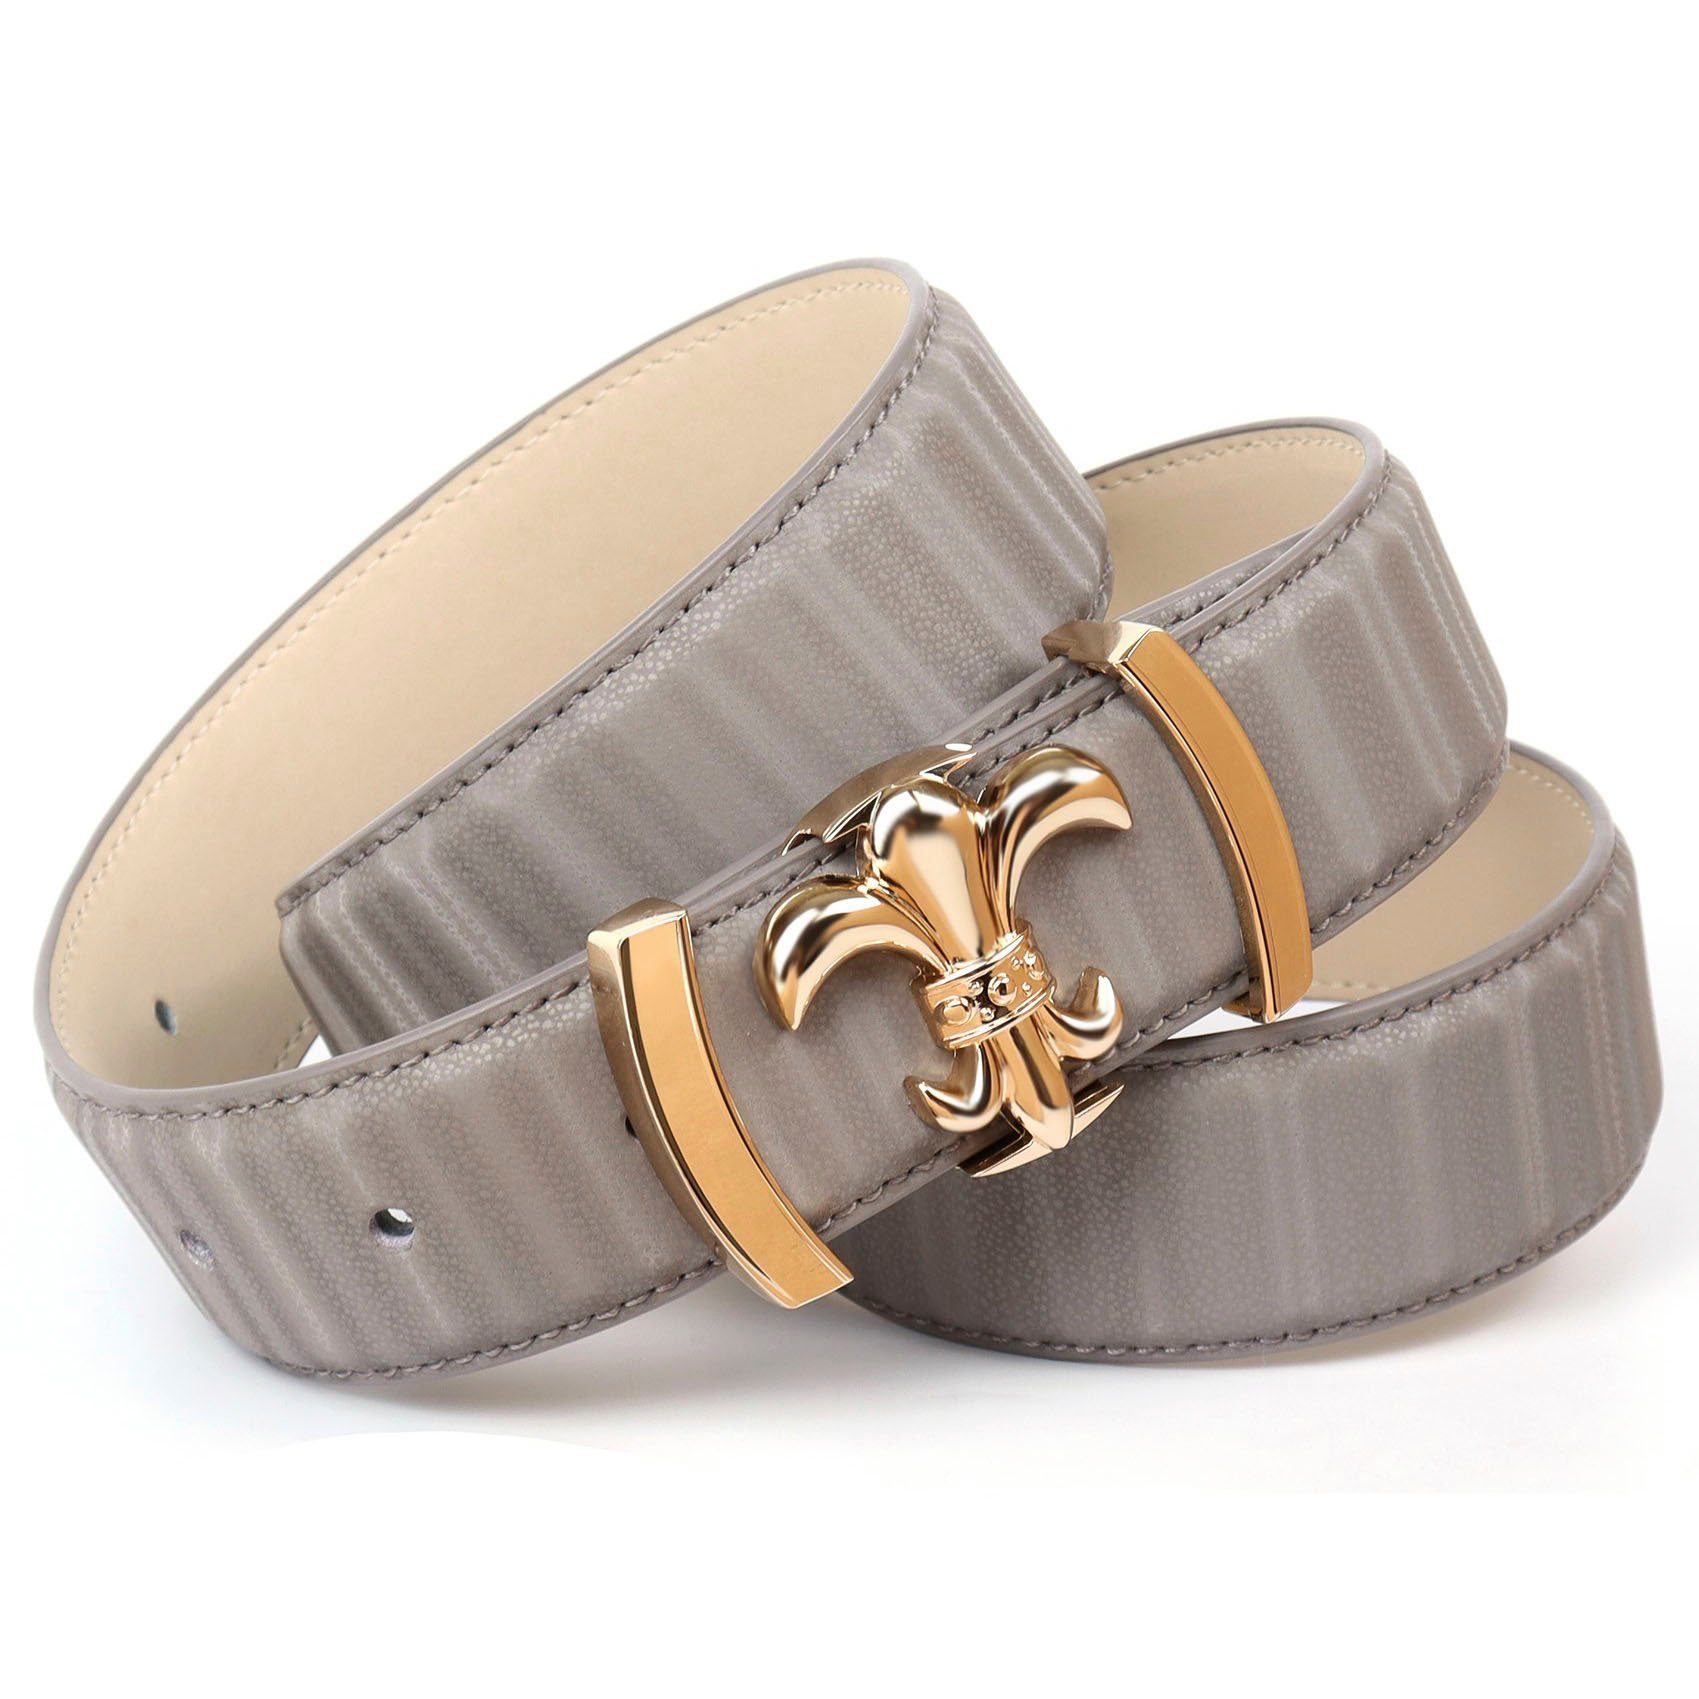 Preislimitierter Sonderverkauf Anthoni Crown Ledergürtel mit filigraner Koppel-Schließe goldfarbener grau